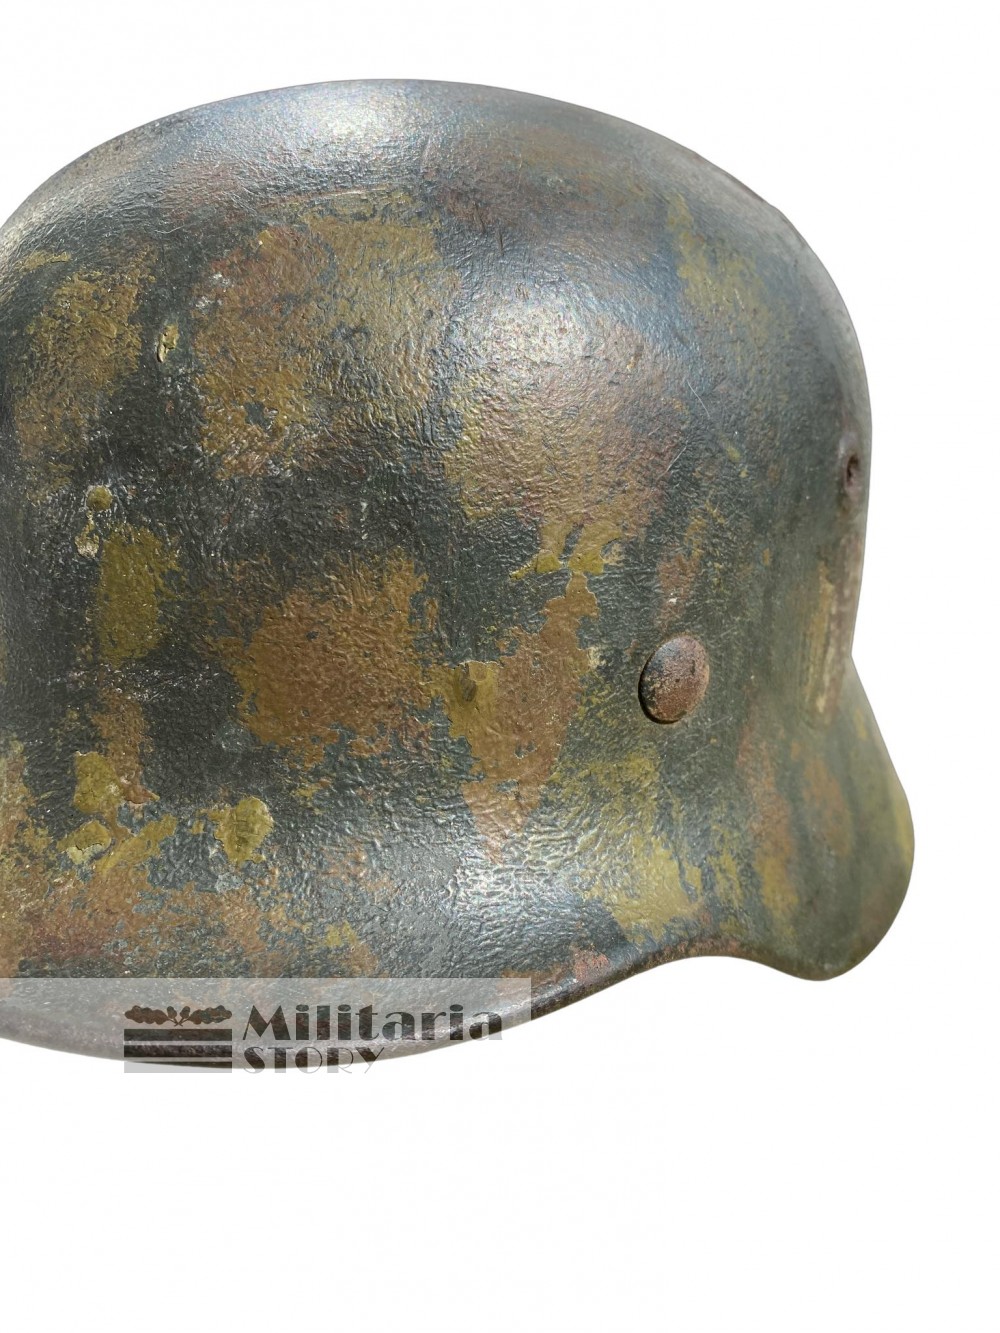 M40 Heer Tortoise camo helmet  - M40 Heer Tortoise camo helmet : Vintage German Headgear